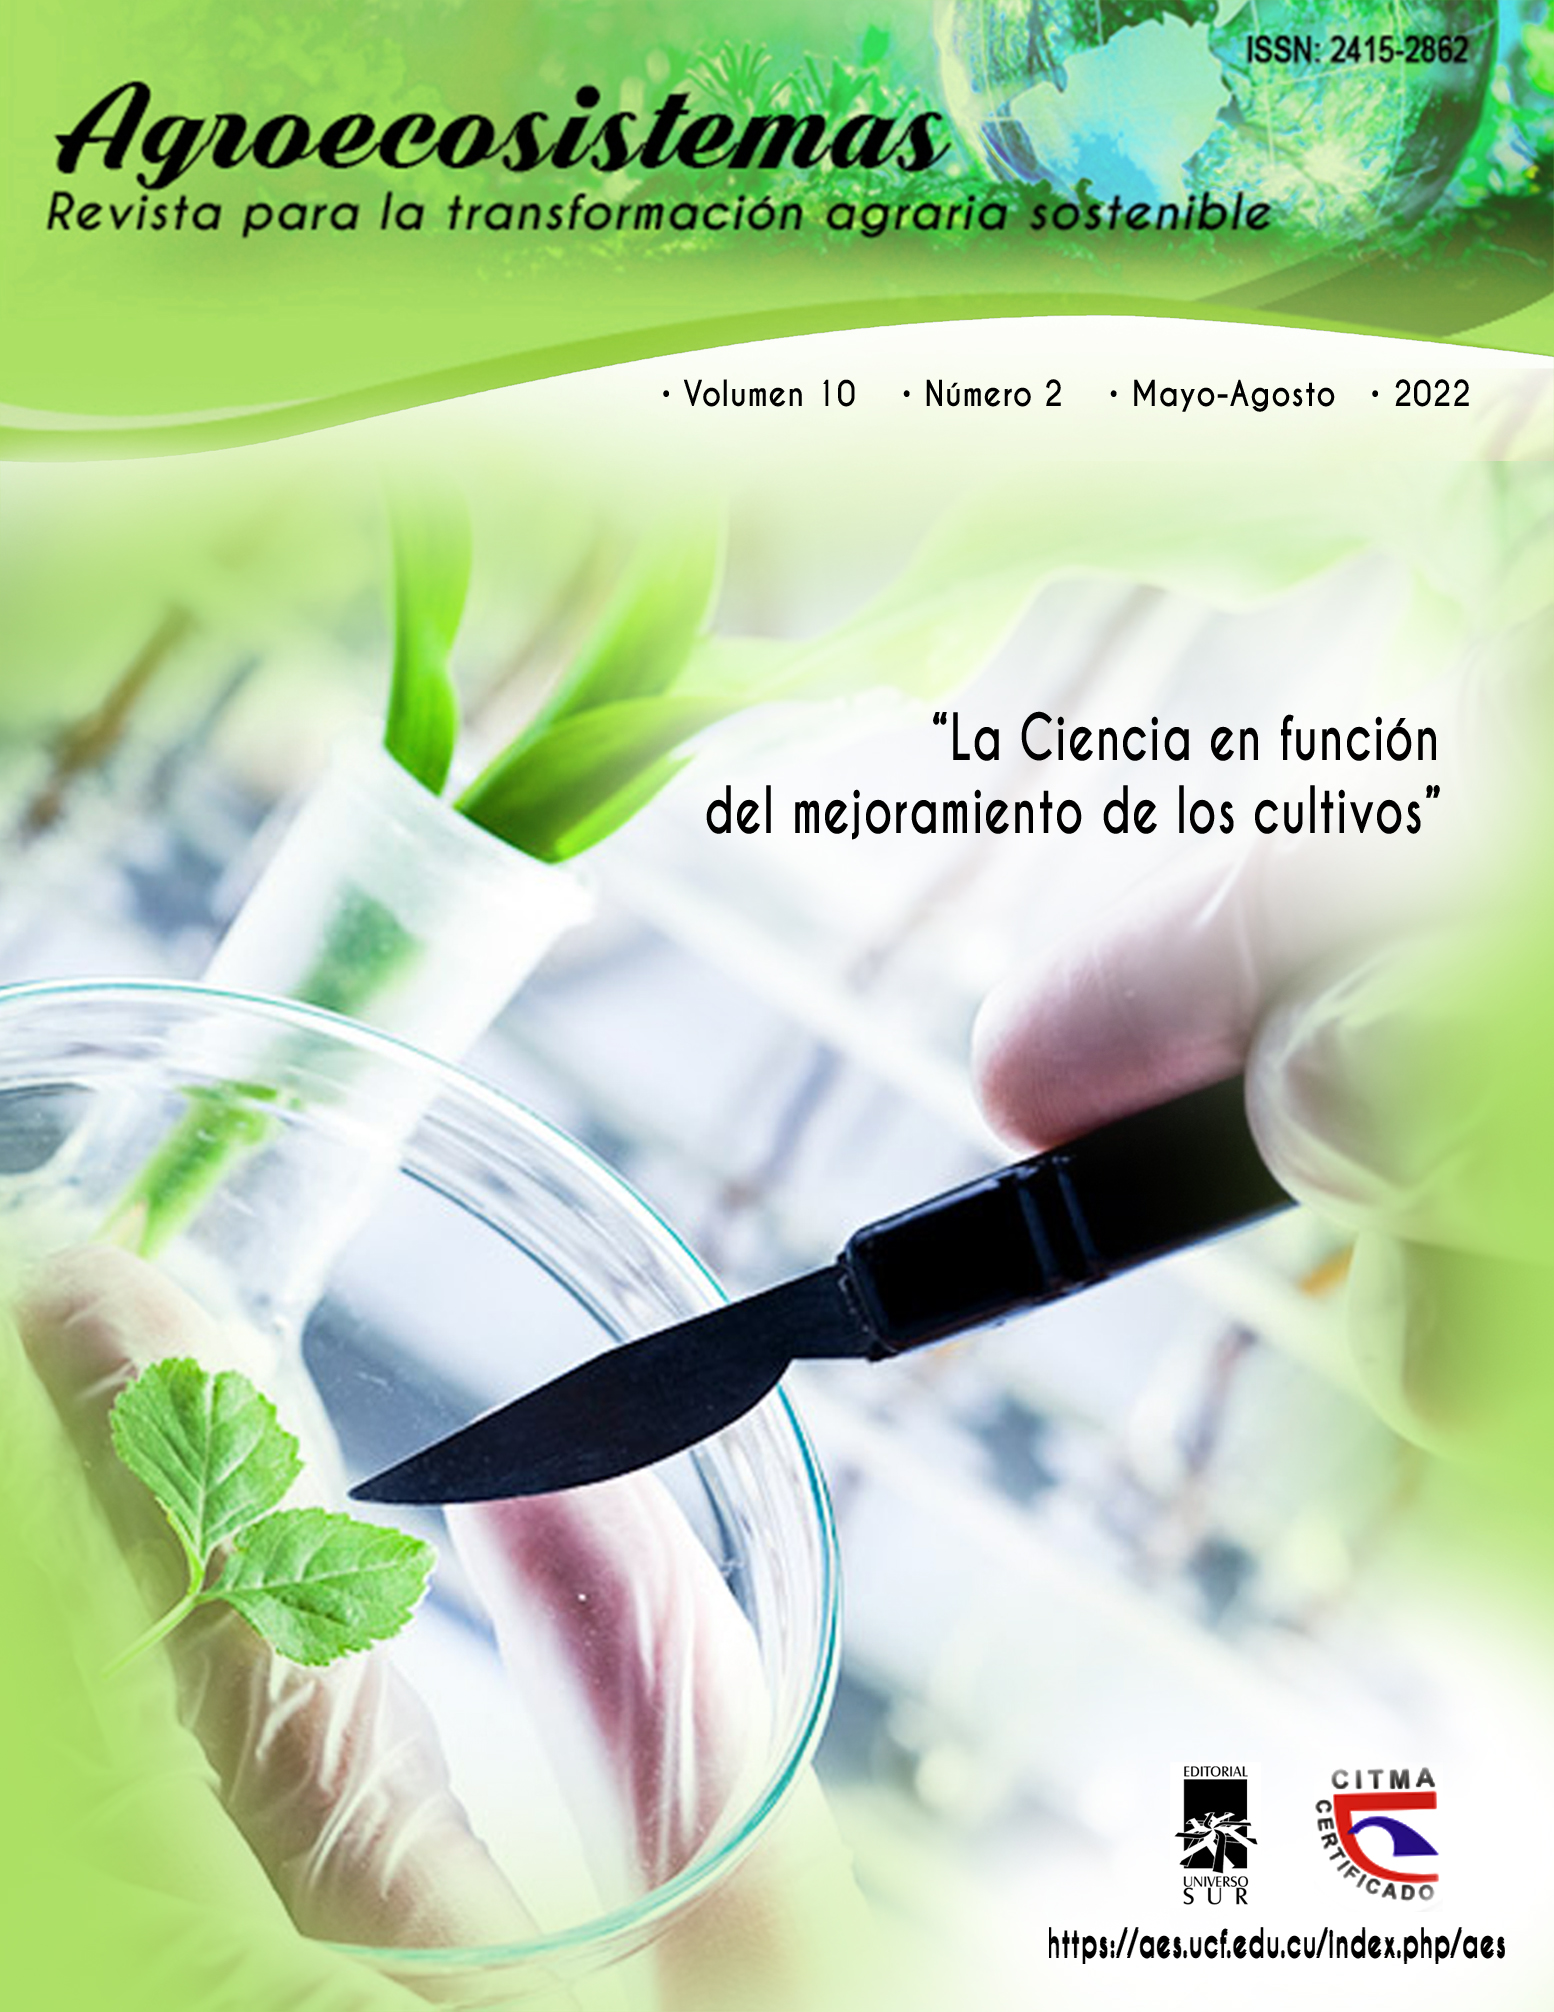 					View Vol. 10 No. 2 (2022): La Ciencia en función del mejoramiento de los cultivos
				